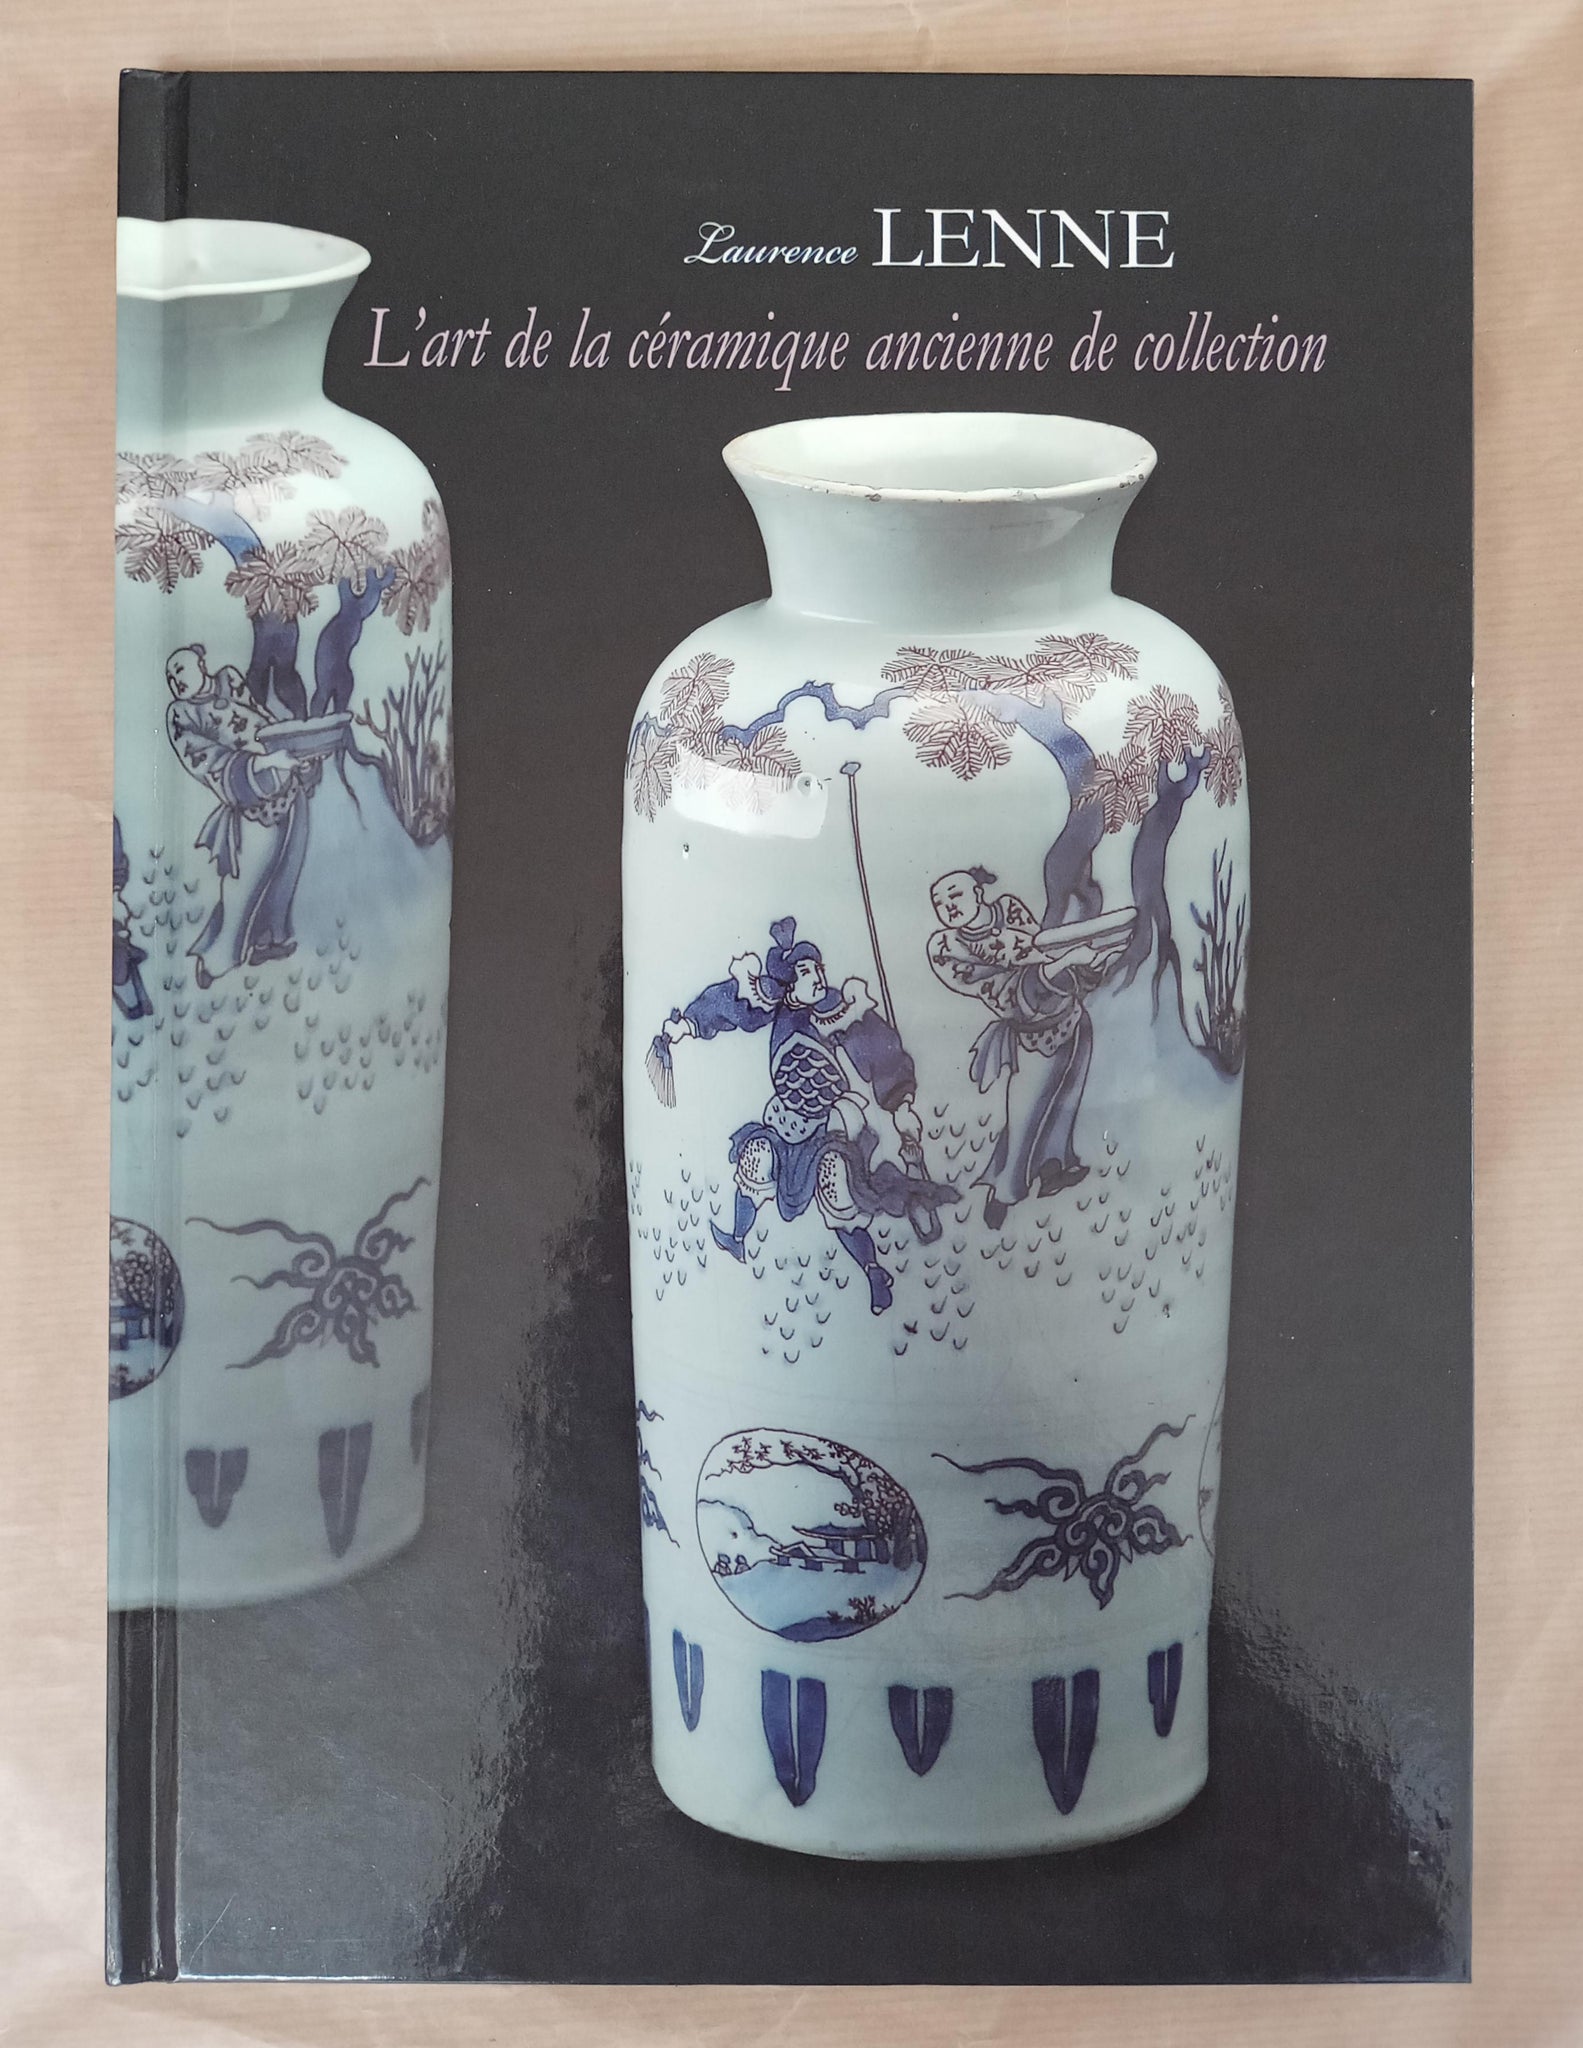 L'art de la céramique ancienne de collection. Catalogue de céramiques ancienne de collection, accompagné d'une étude de couleurs sur porcelaine par microfluescence X.